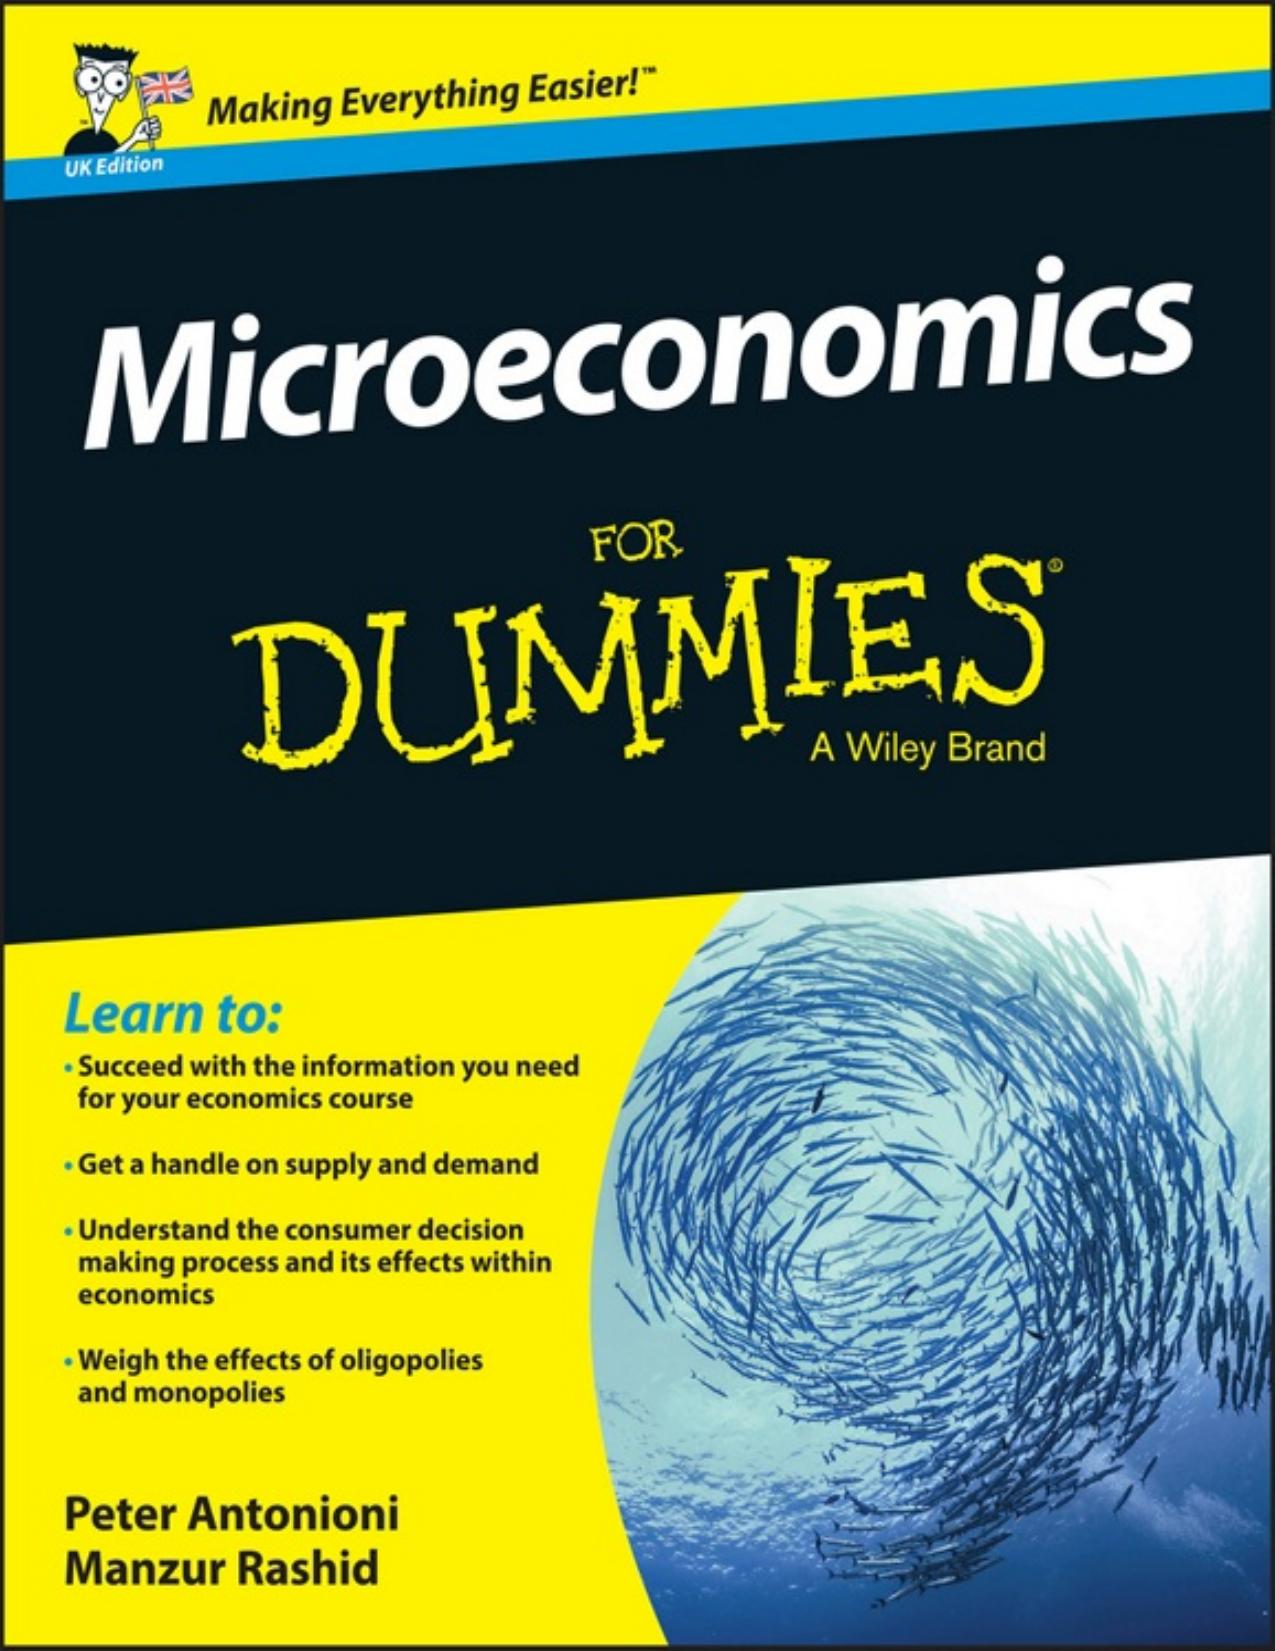 Microeconomics For Dummies - UK - PDFDrive.com